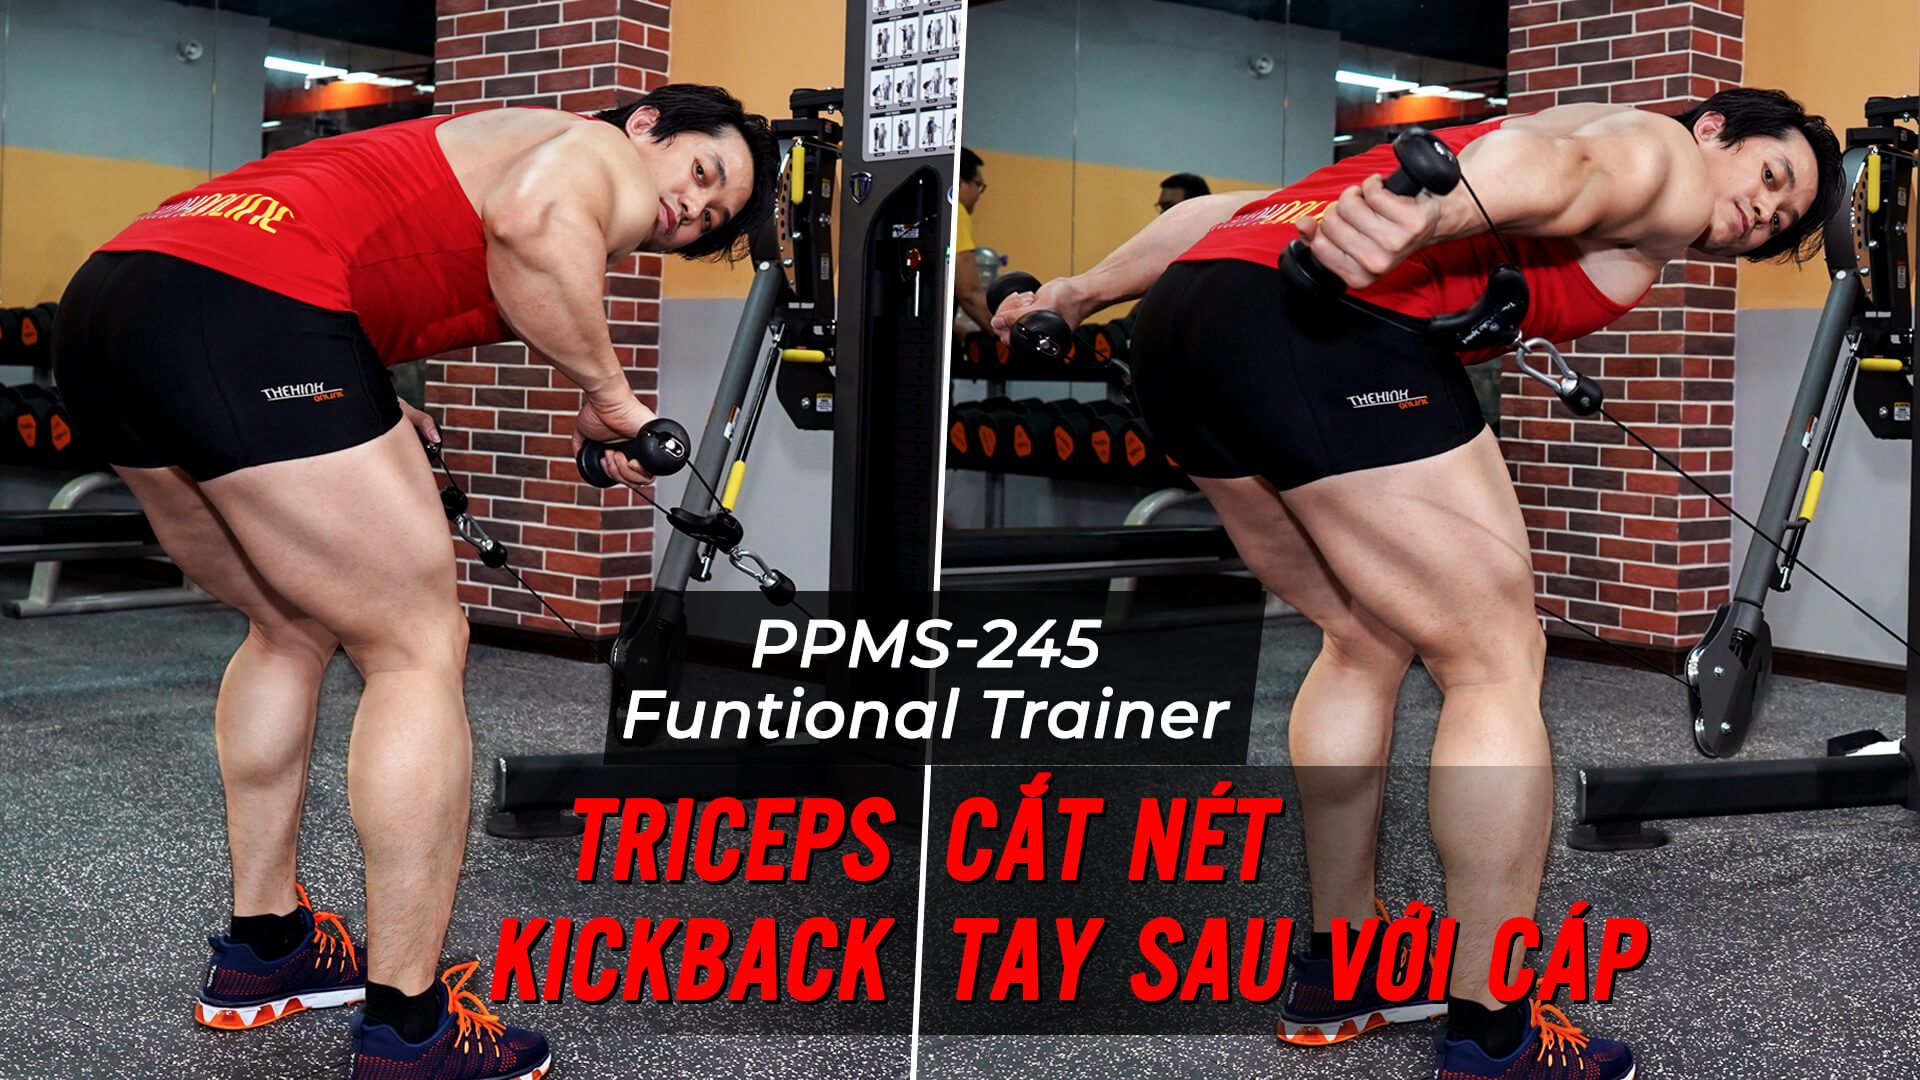 Triceps Kickback - Hướng dẫn tập cắt nét tay sau trên Functional Trainer 